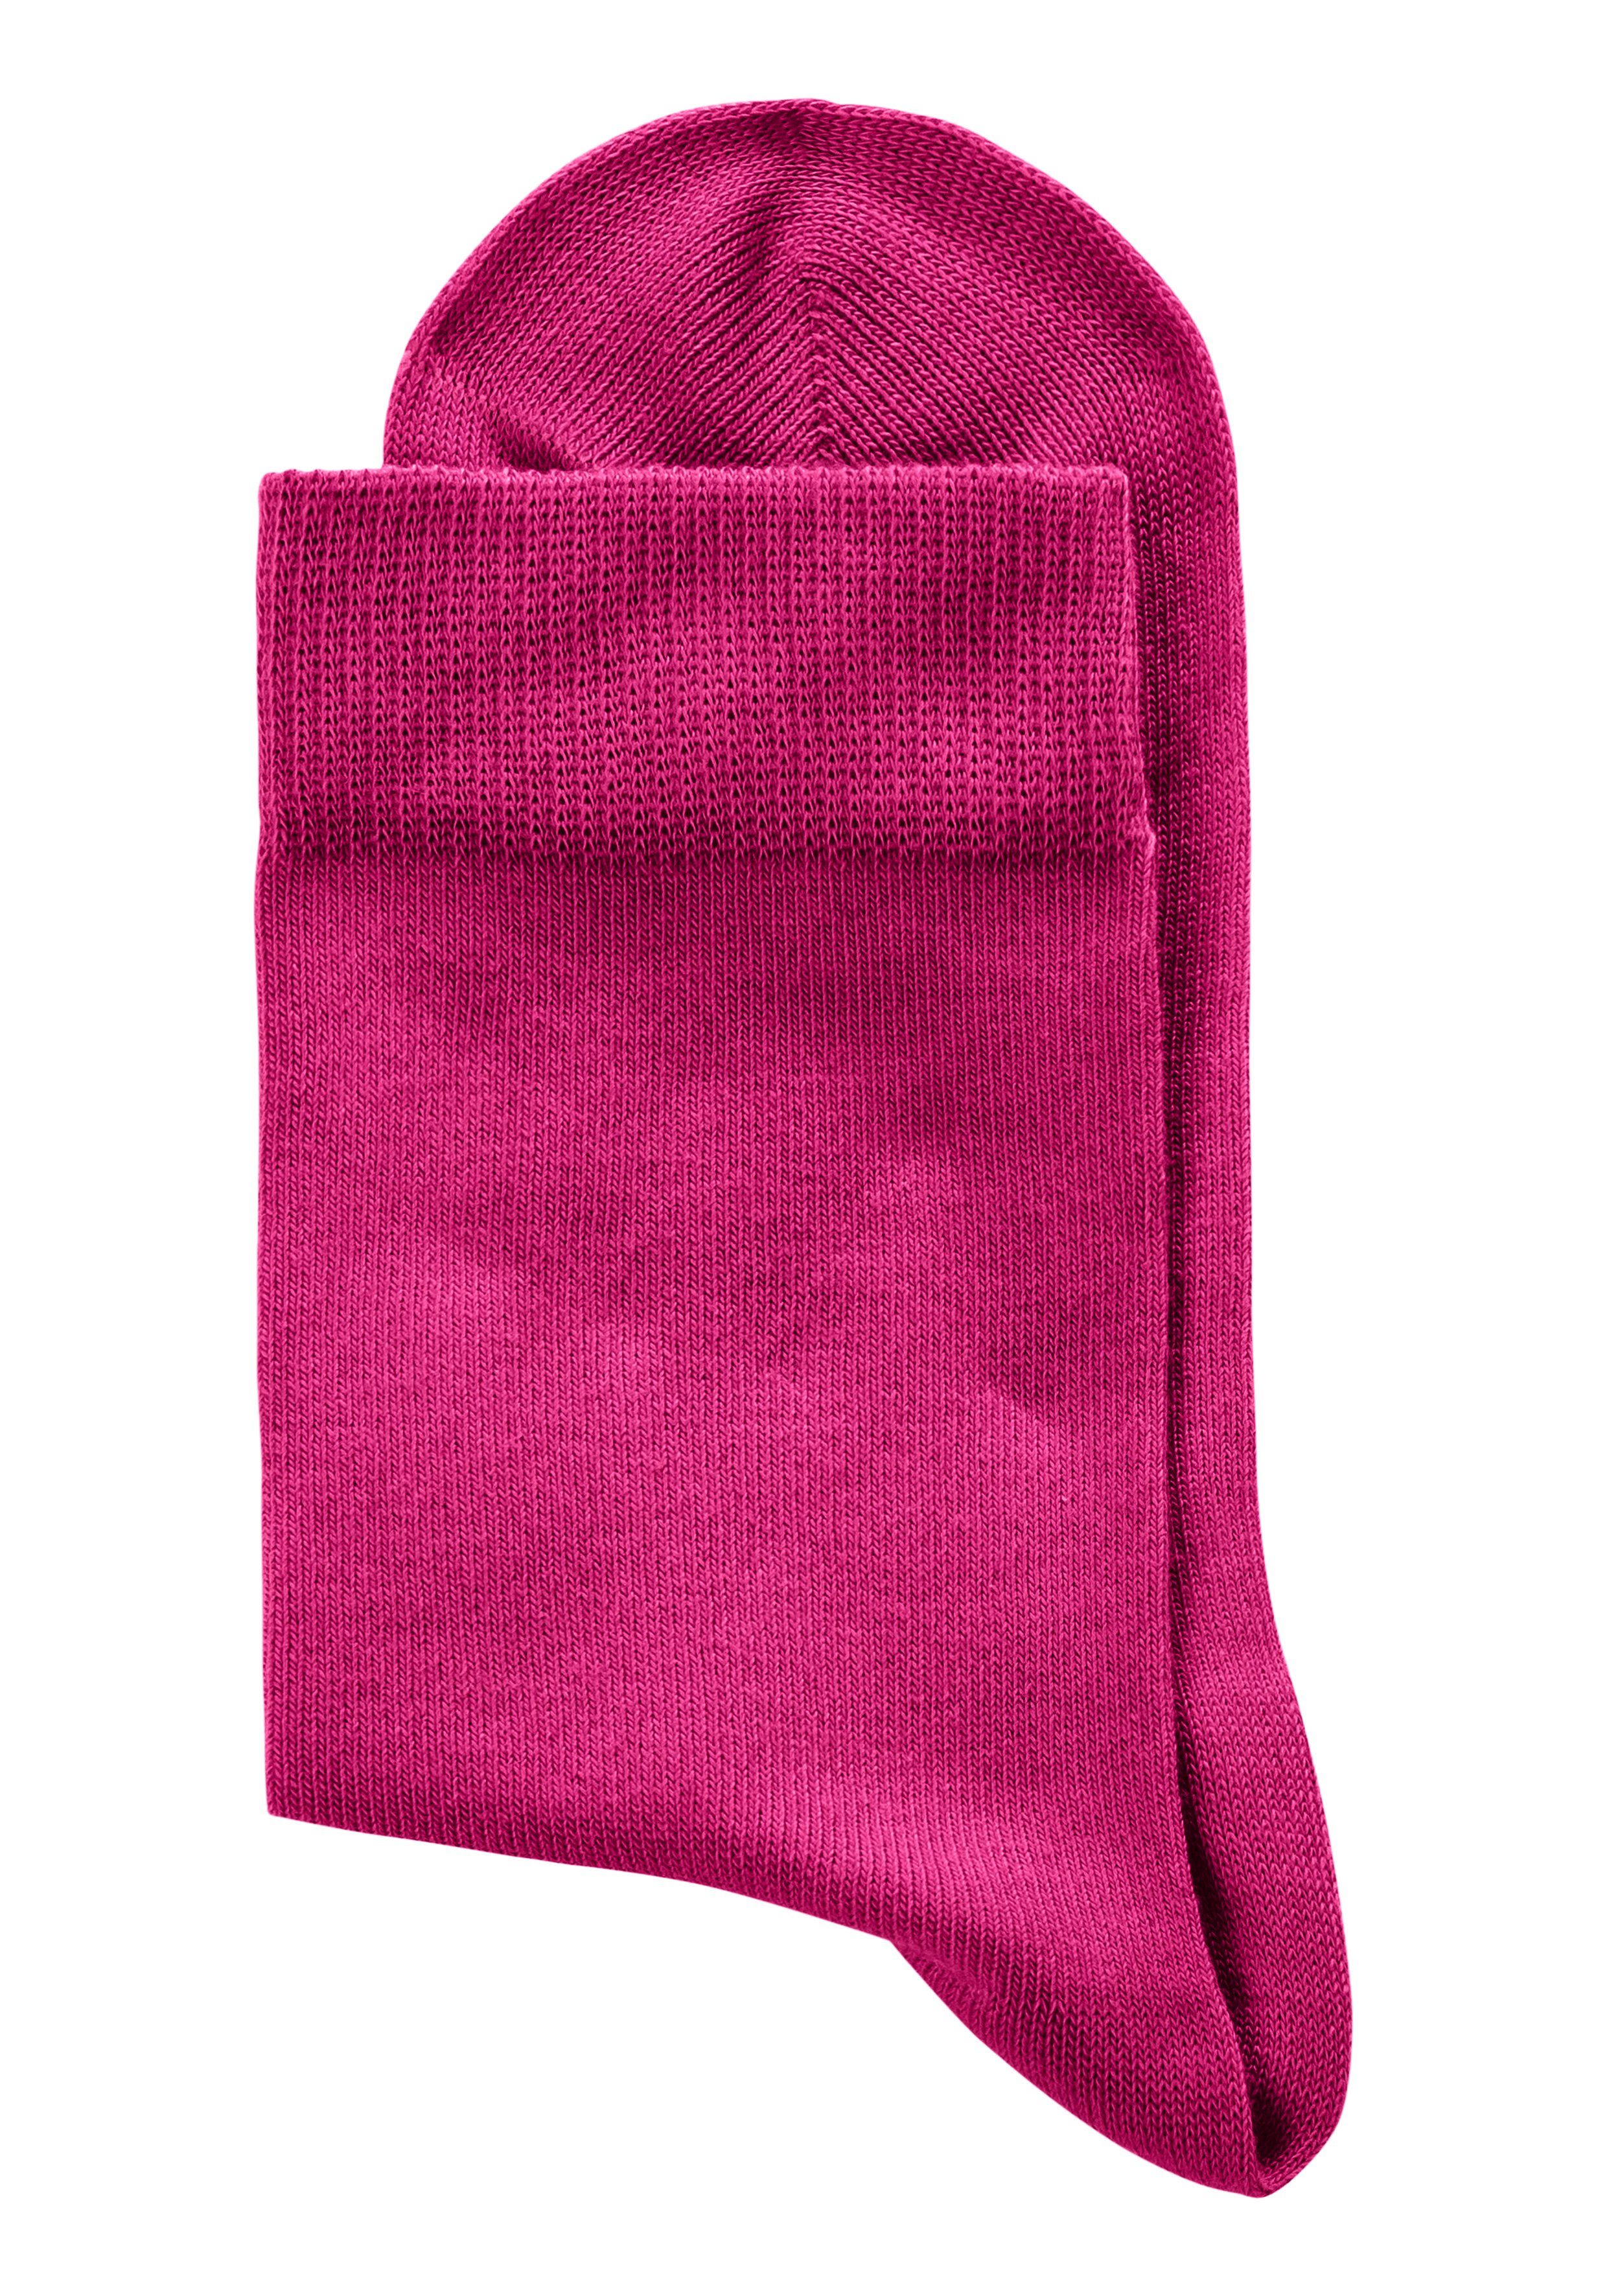 H.I.S Socken (Set, 4-Paar) blau, 1x unterschiedlichen flieder, pink, bordeaux 1x in Farbzusammenstellungen 1x 1x